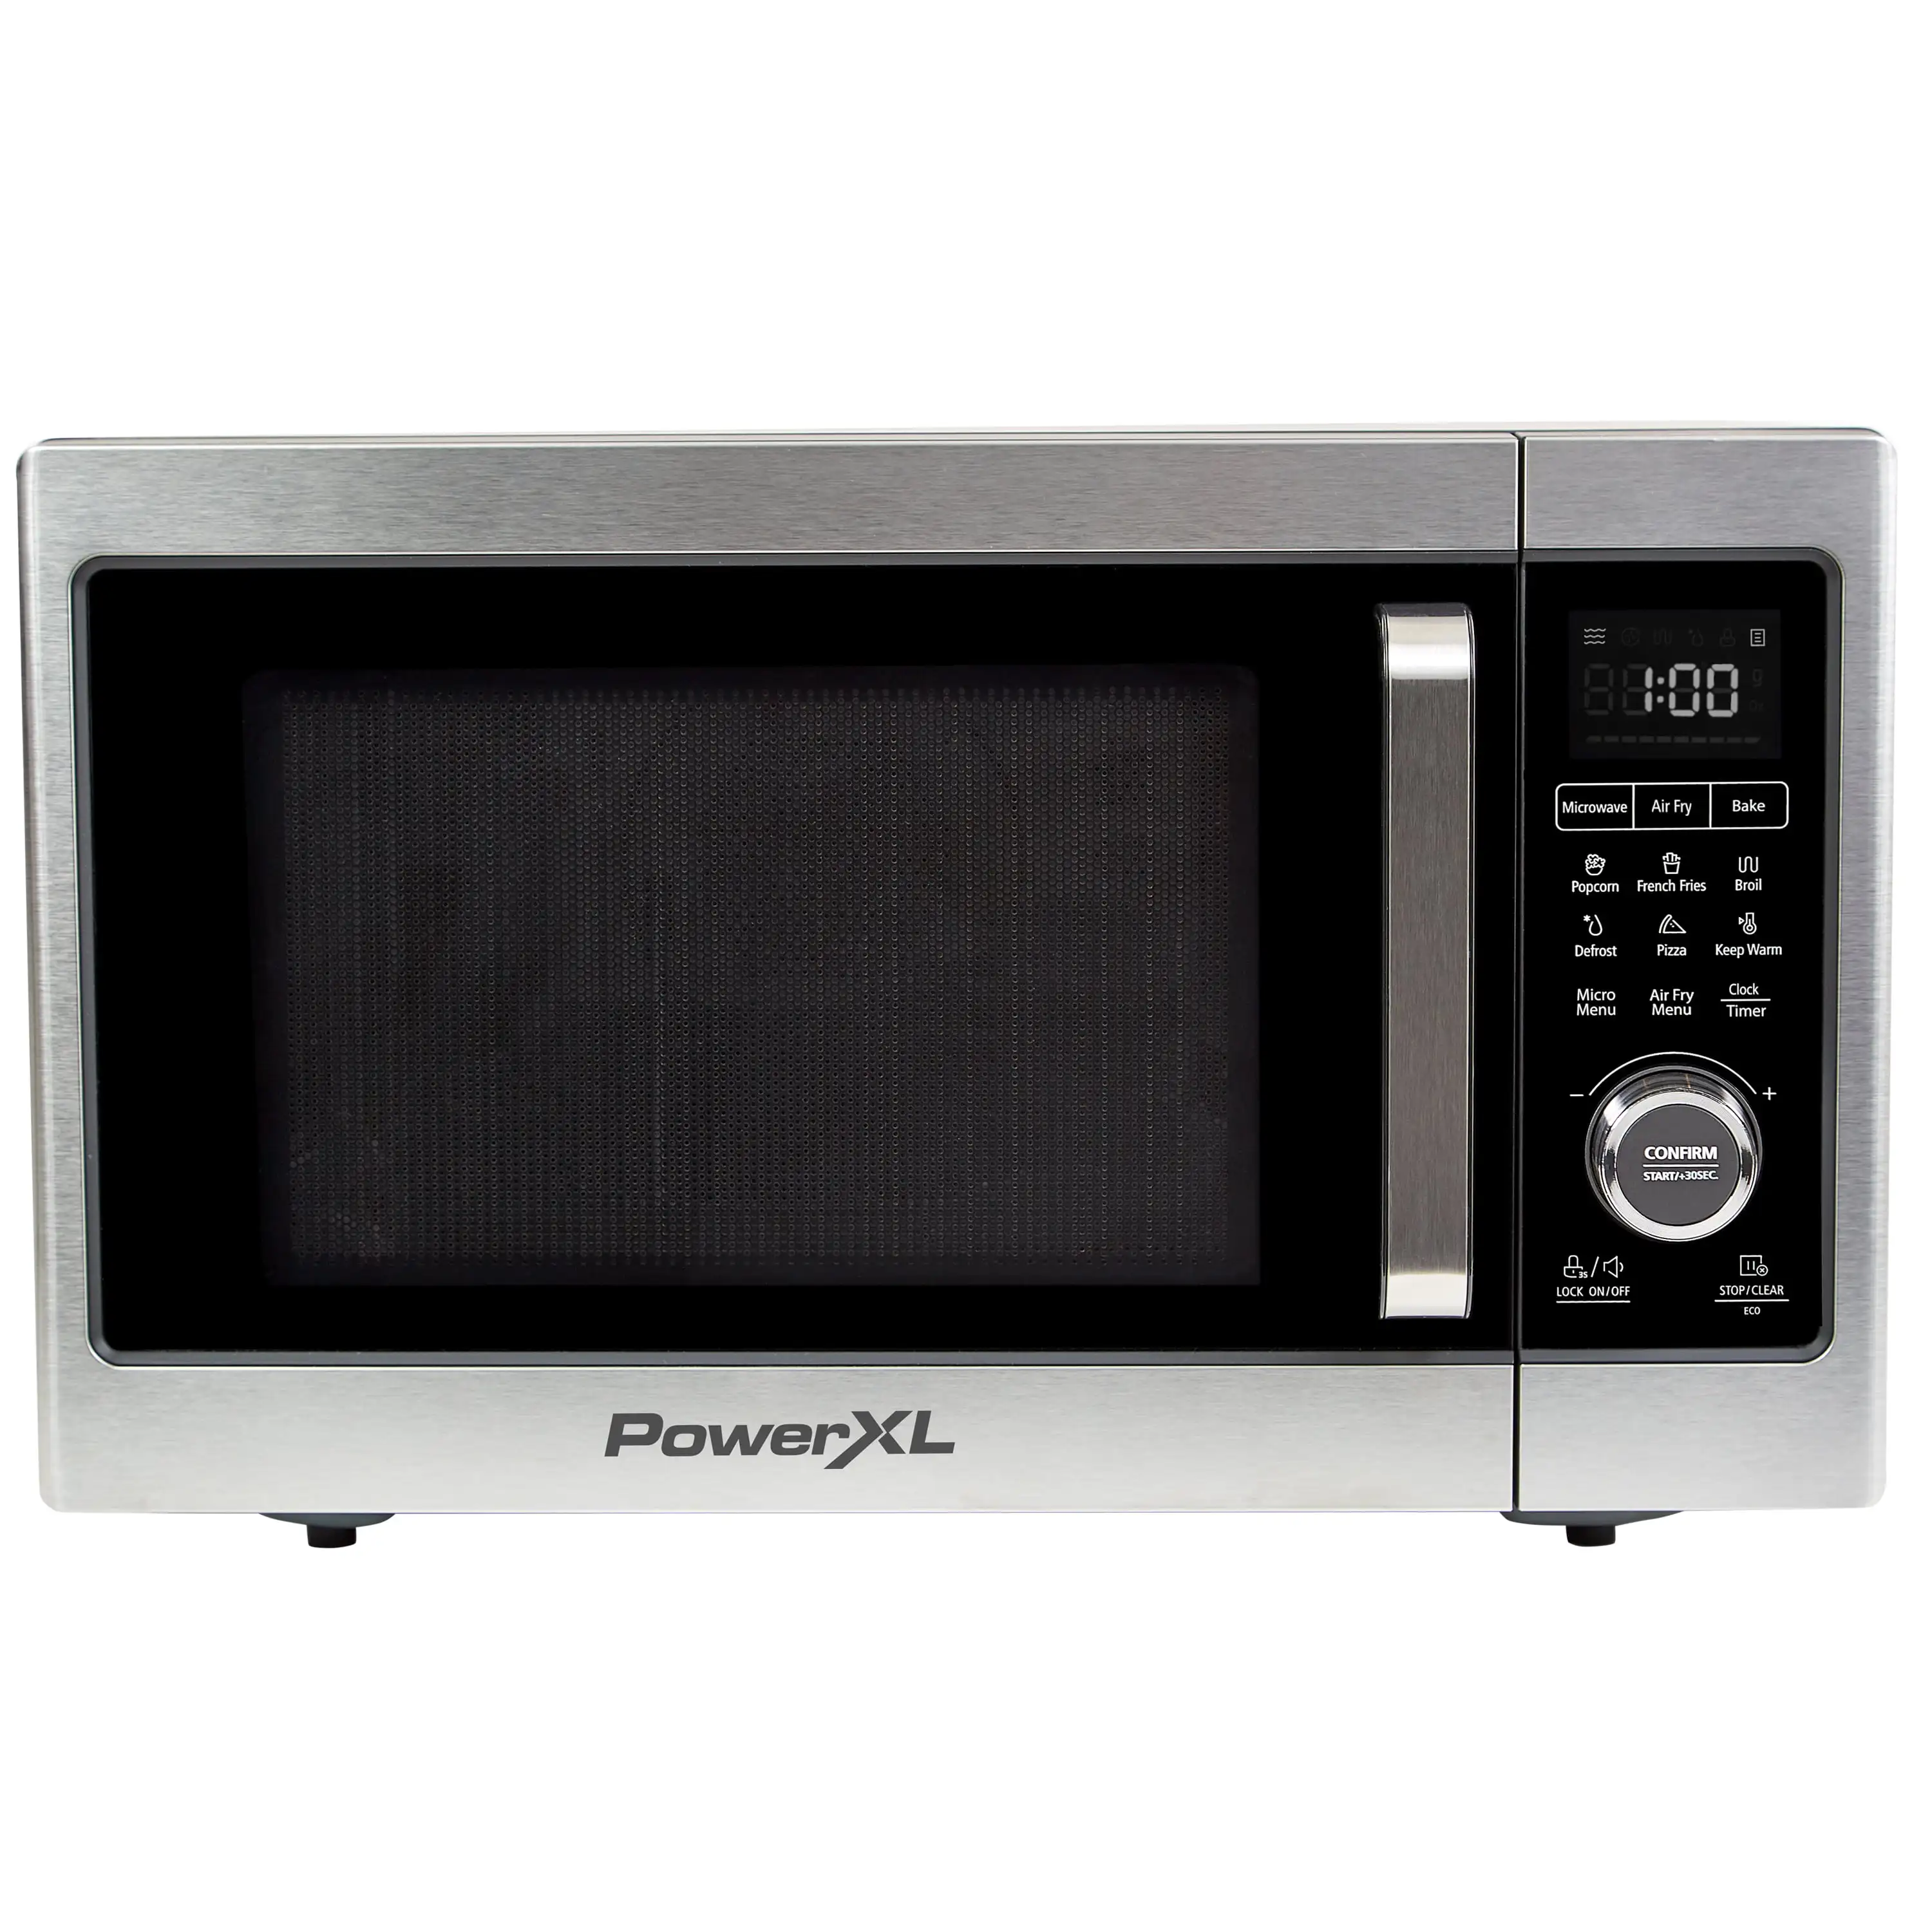 Microwave Air Fryer Plus, Stainless Steel / Black, 1cu.